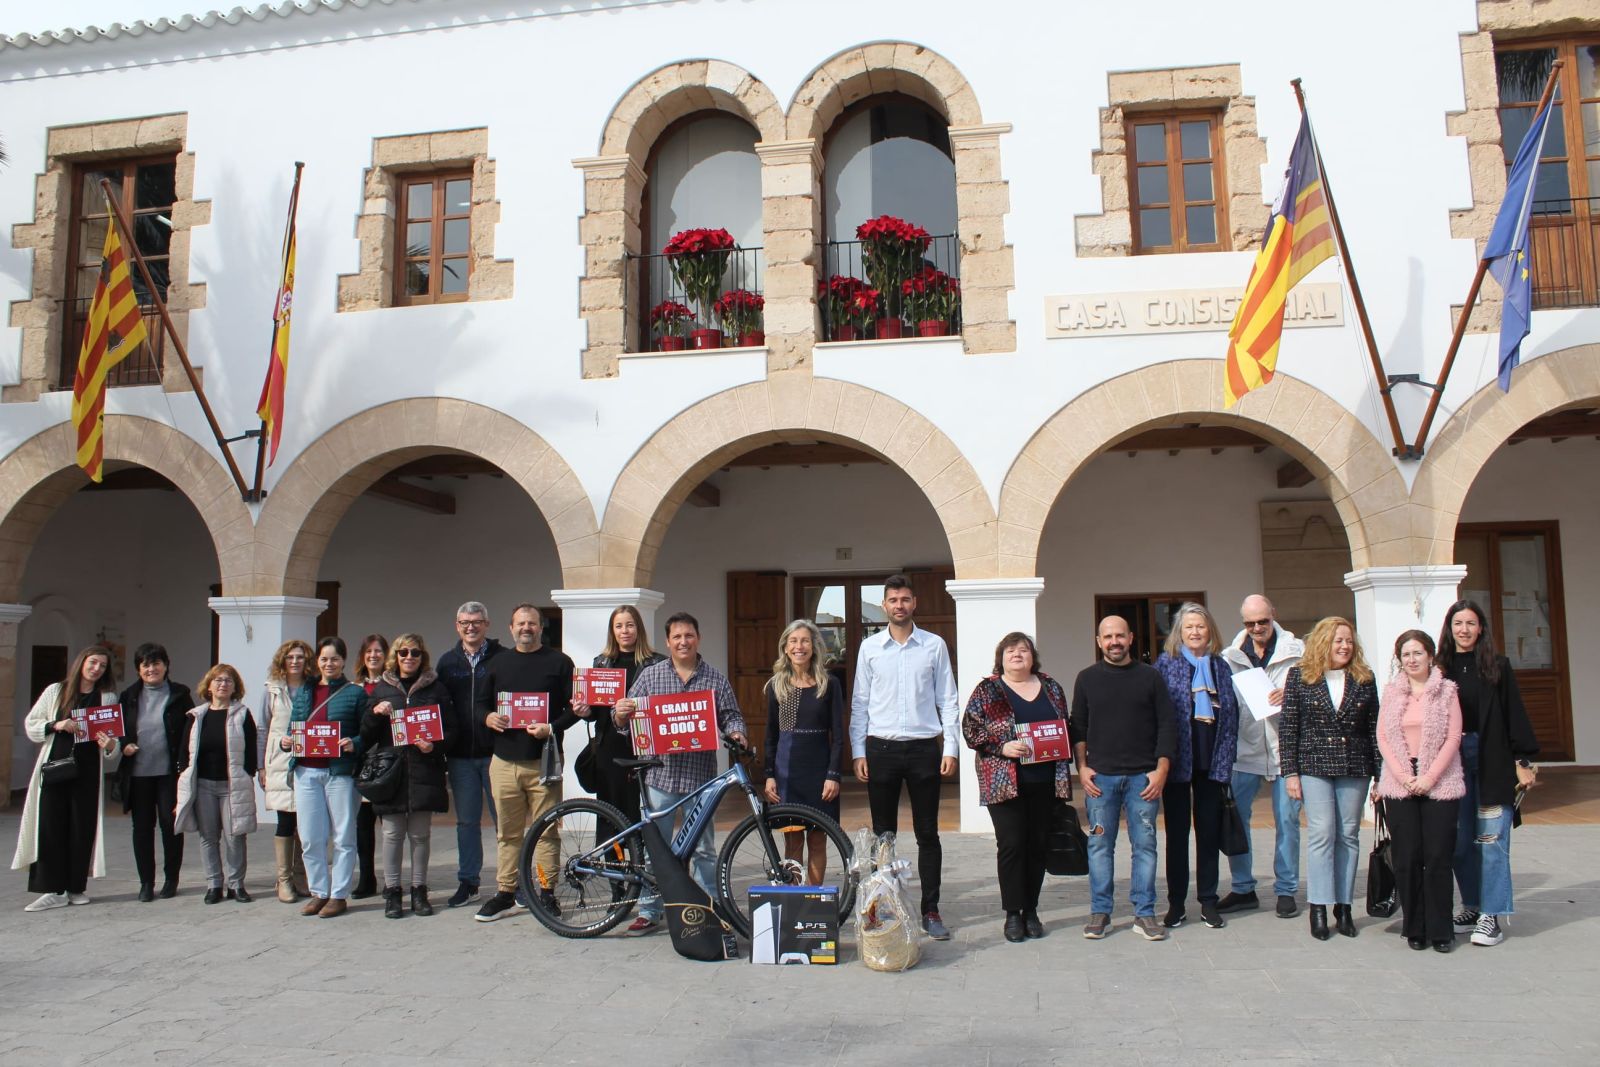 Entregados los 10.000 euros de la campaña de promoción del comercio local en Navidad que logró 330.000 euros en ventas